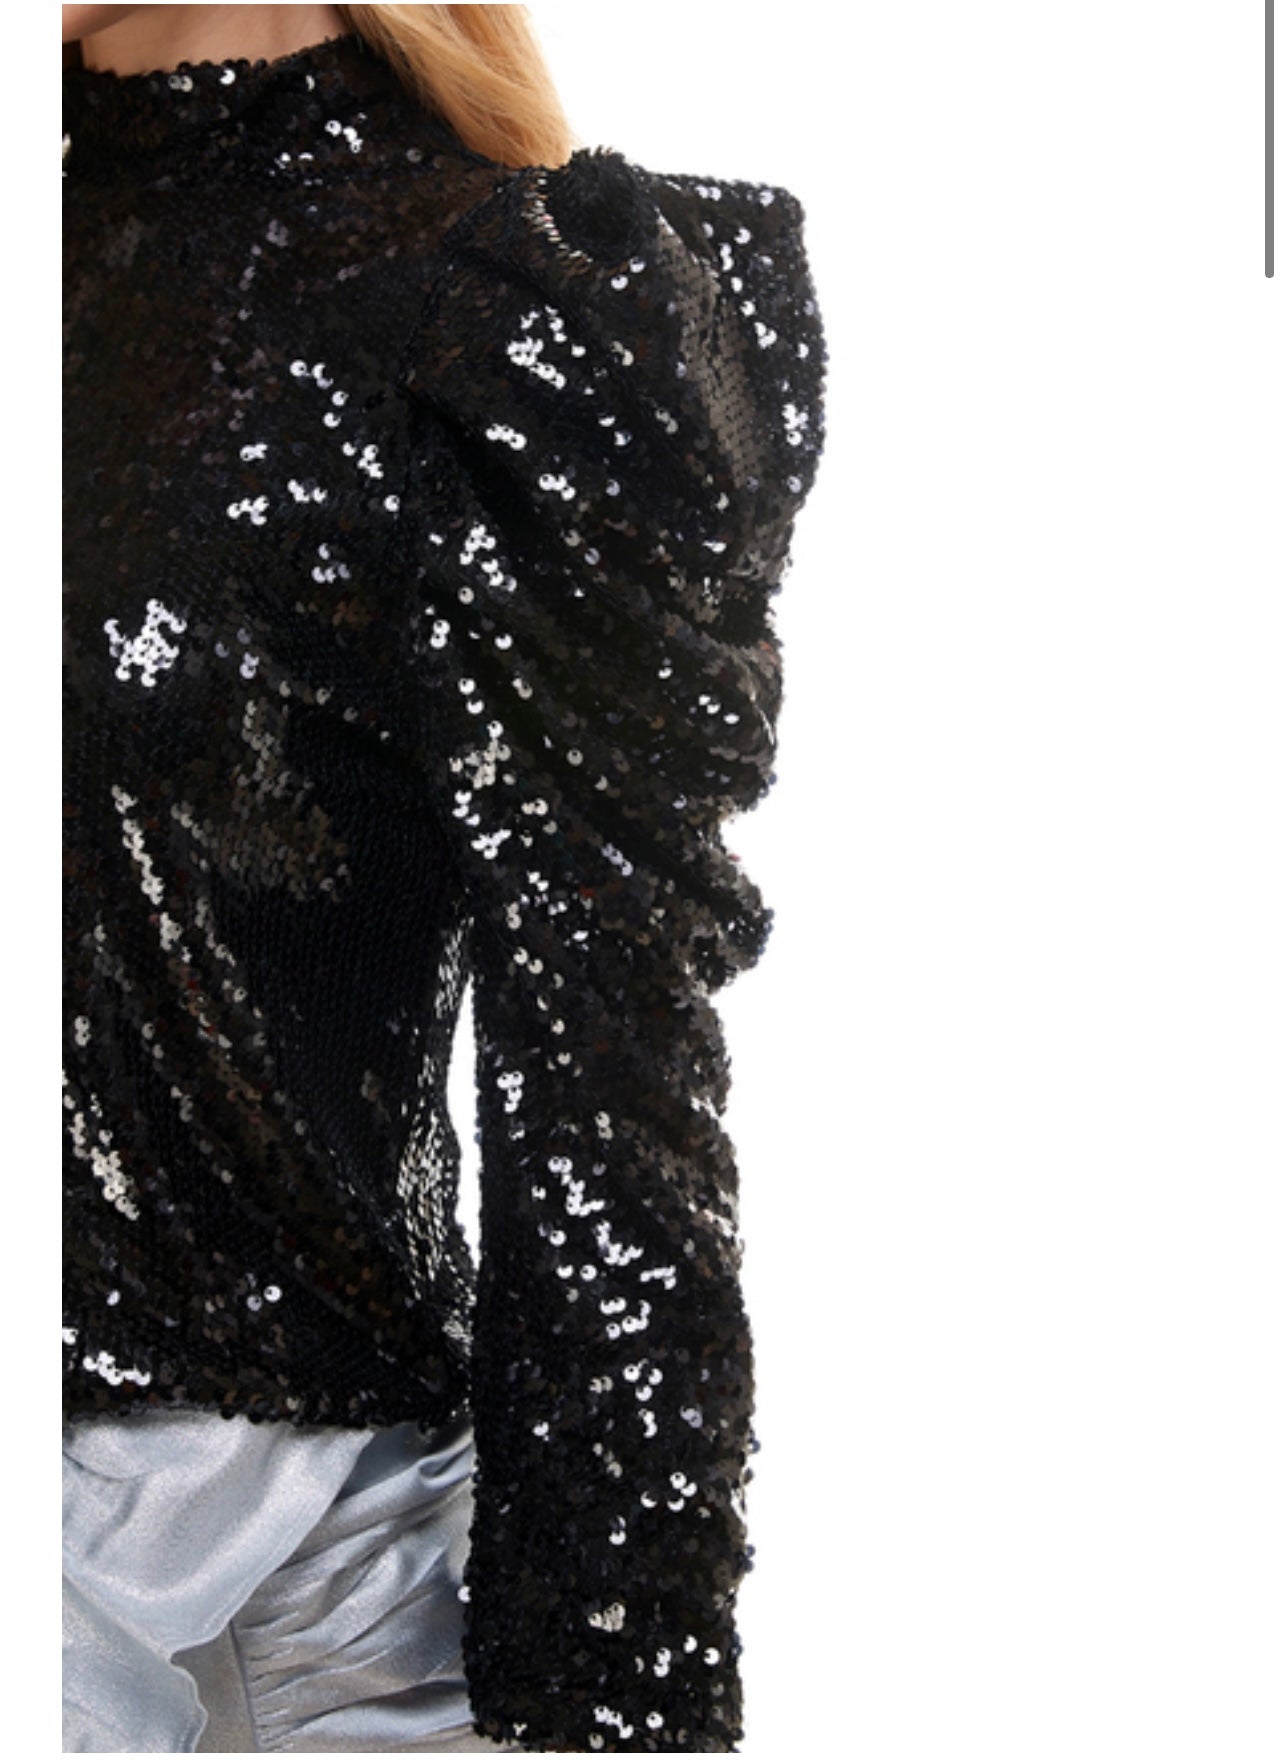 Black Sequin Puff Sleeve Top